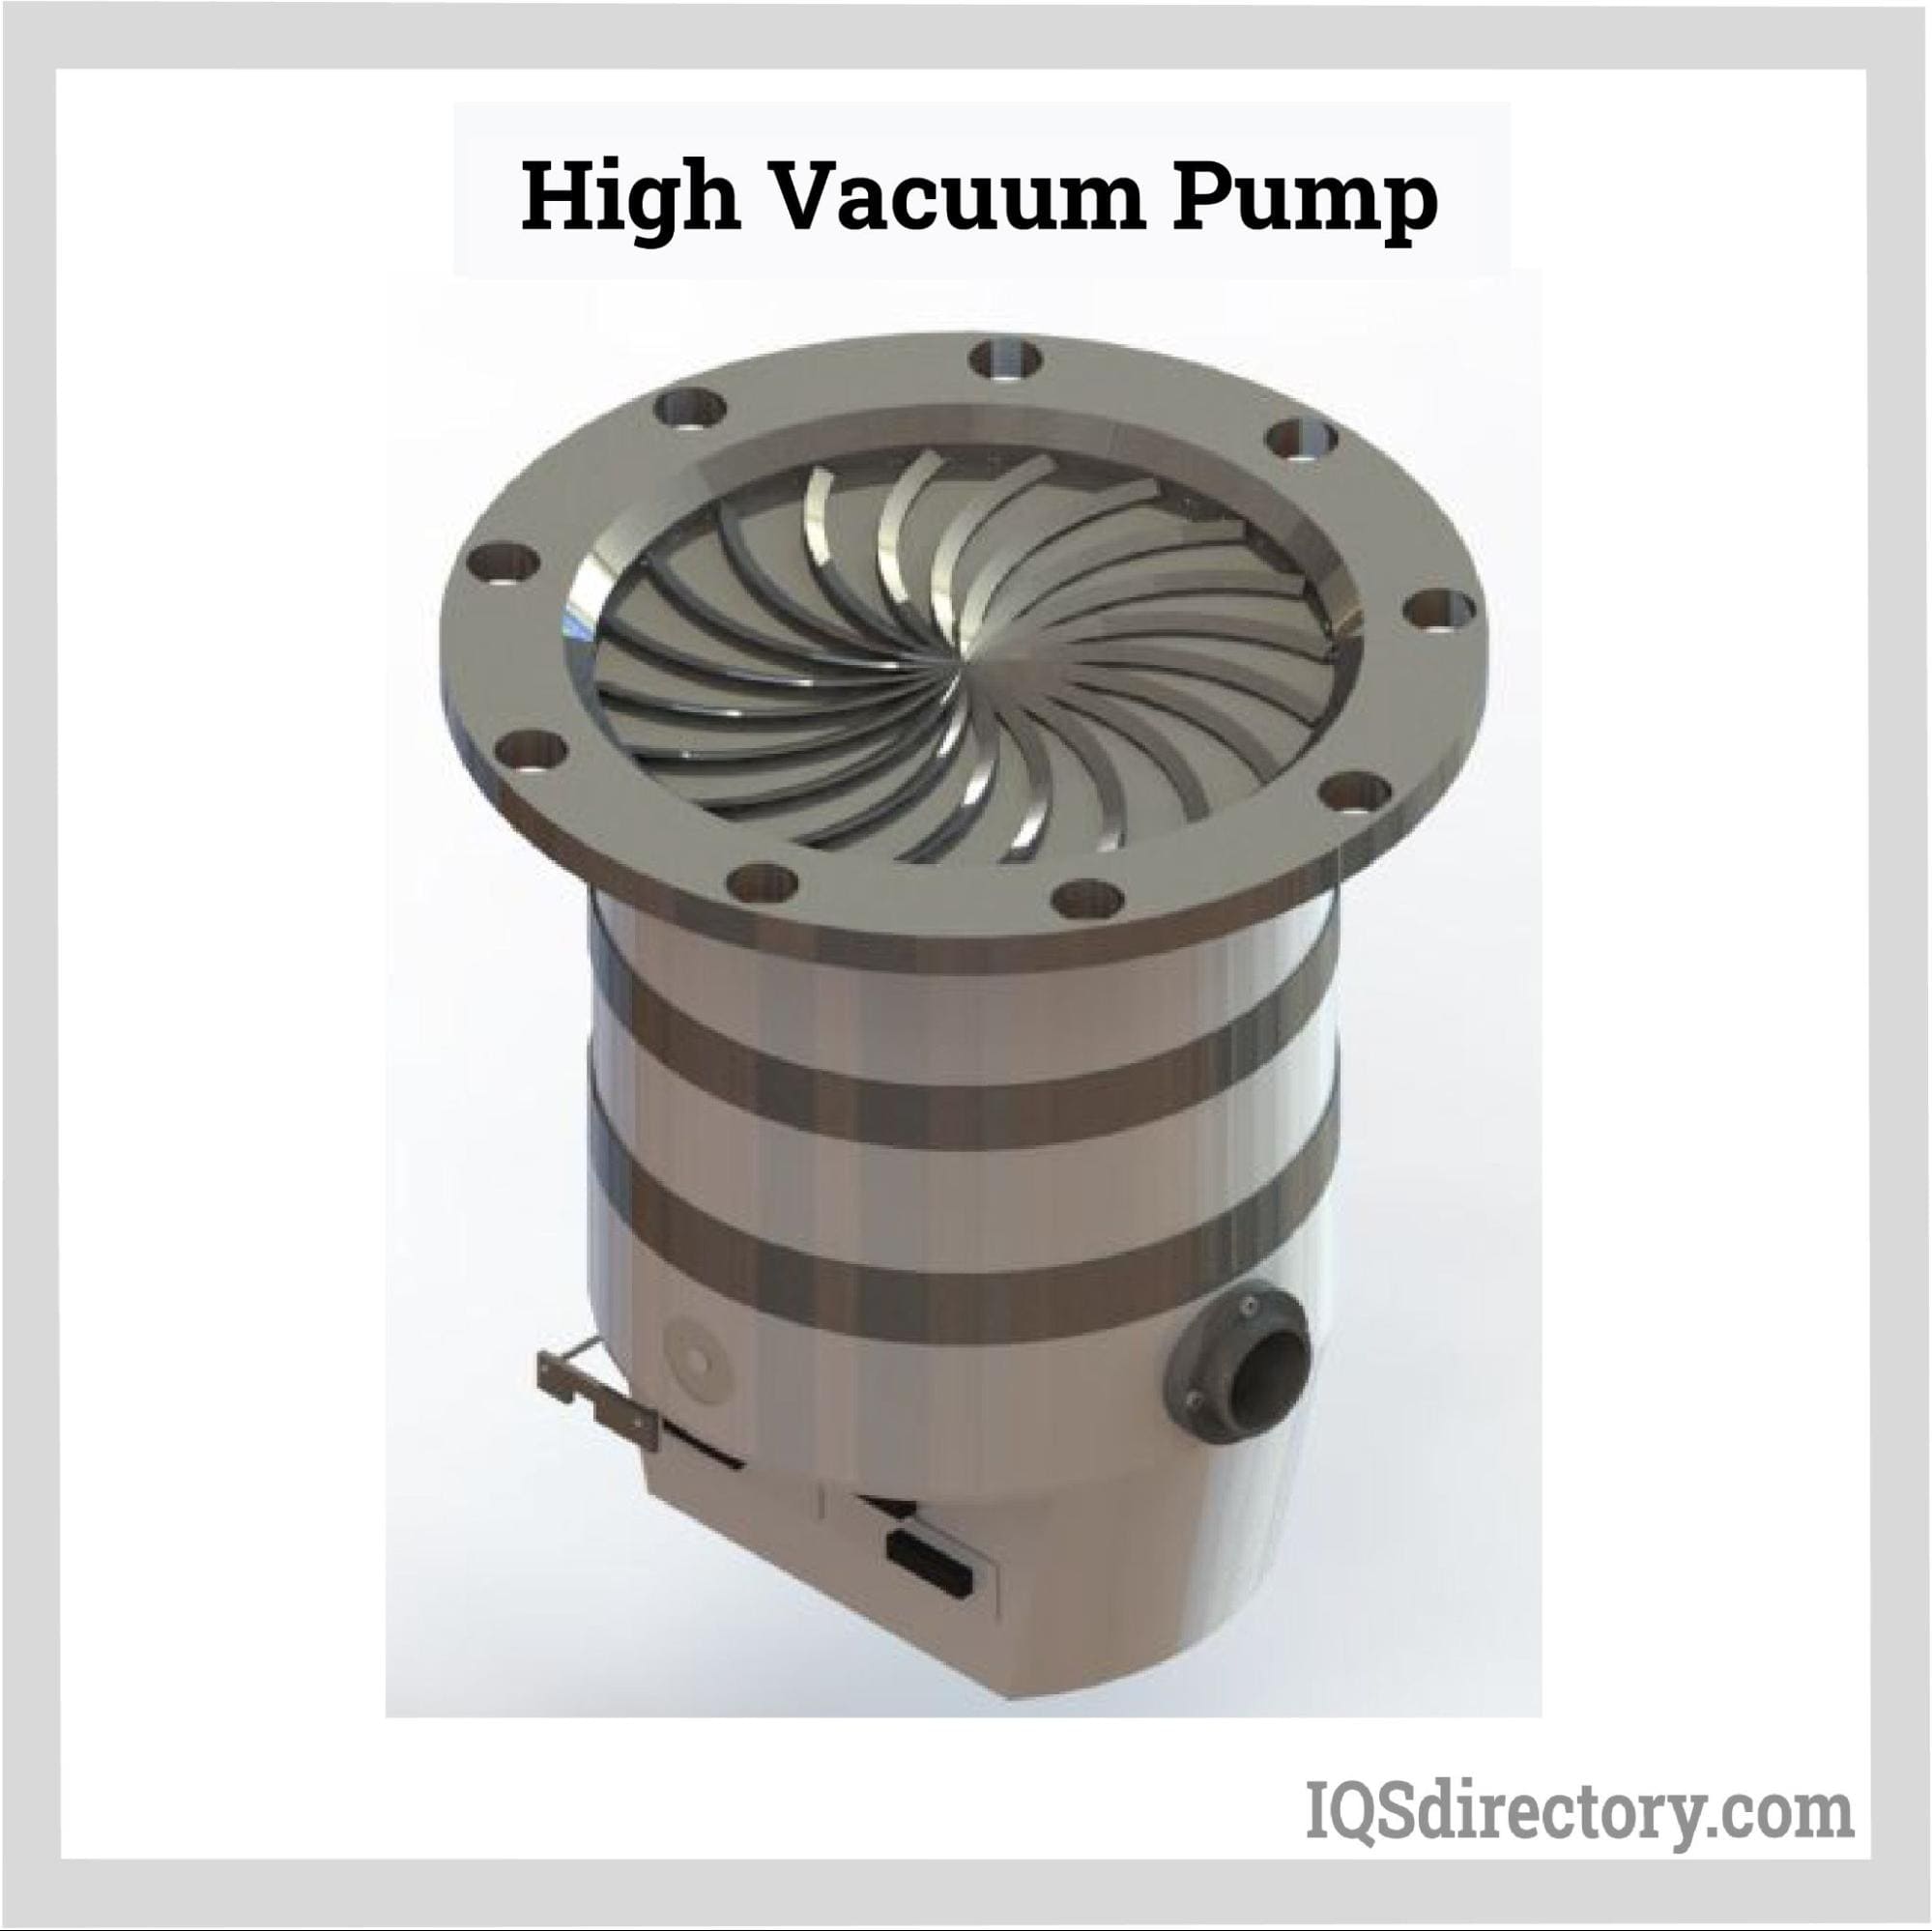 High Vacuum Pump